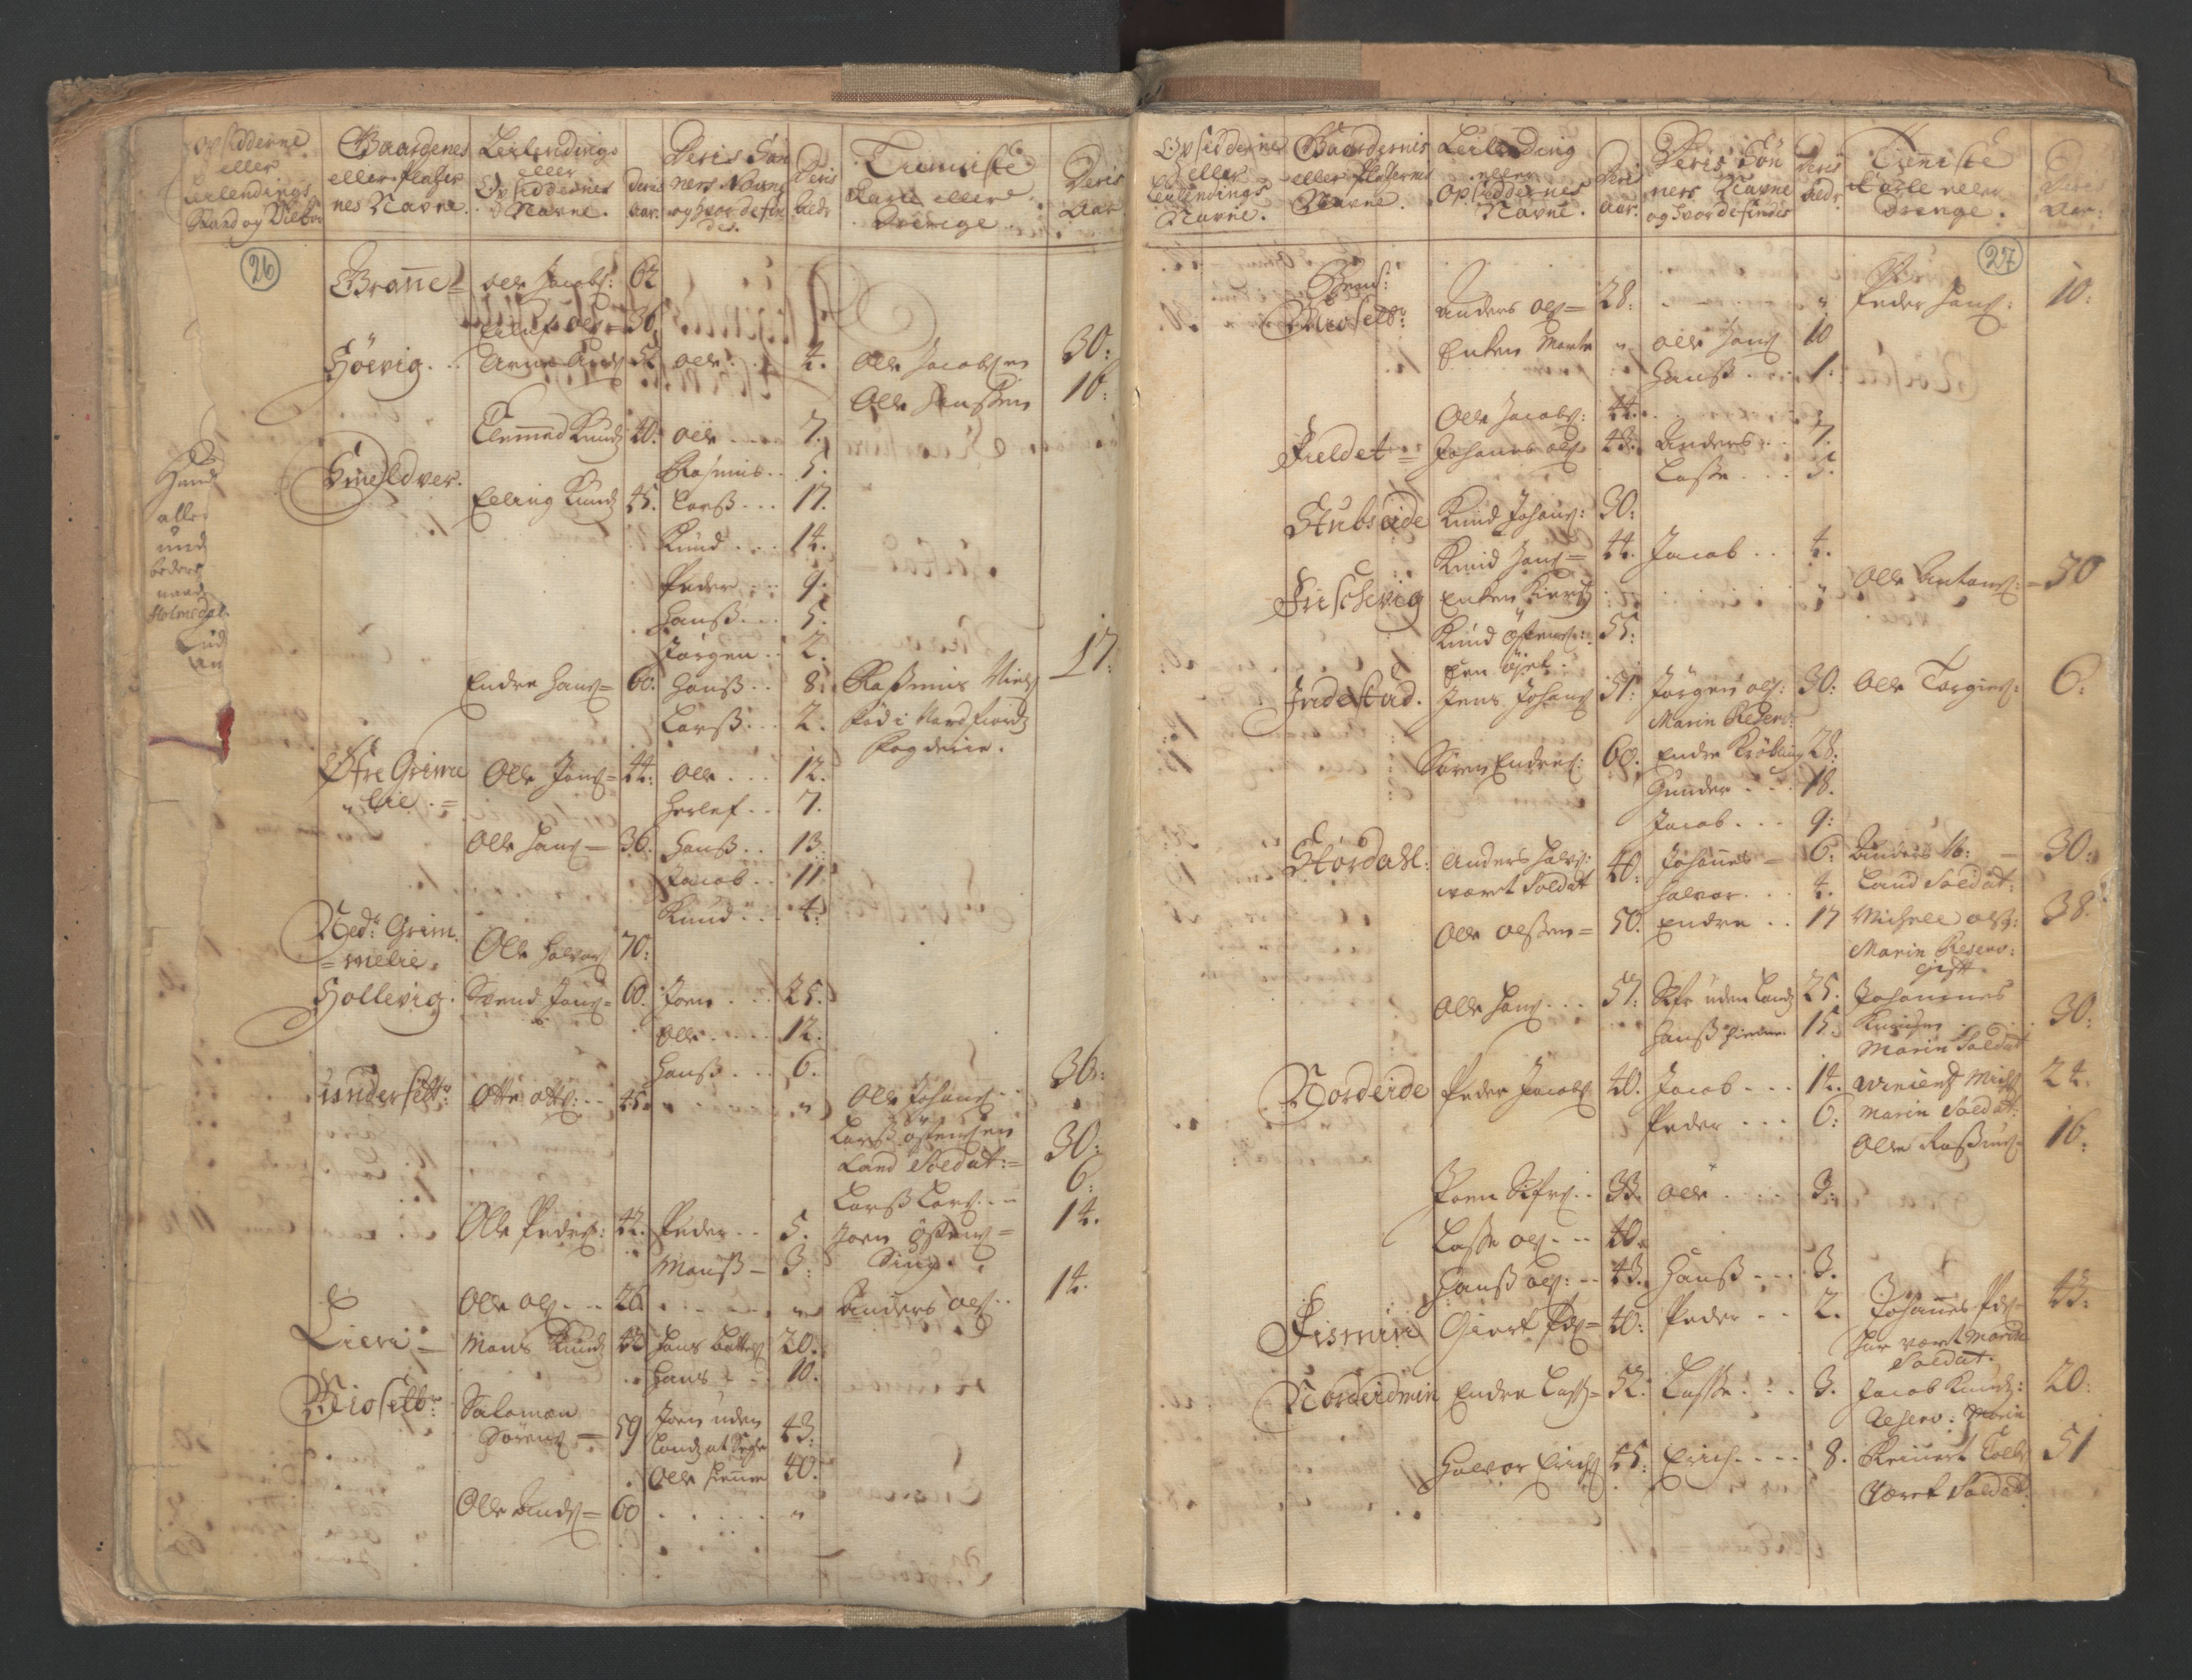 RA, Census (manntall) 1701, no. 9: Sunnfjord fogderi, Nordfjord fogderi and Svanø birk, 1701, p. 26-27